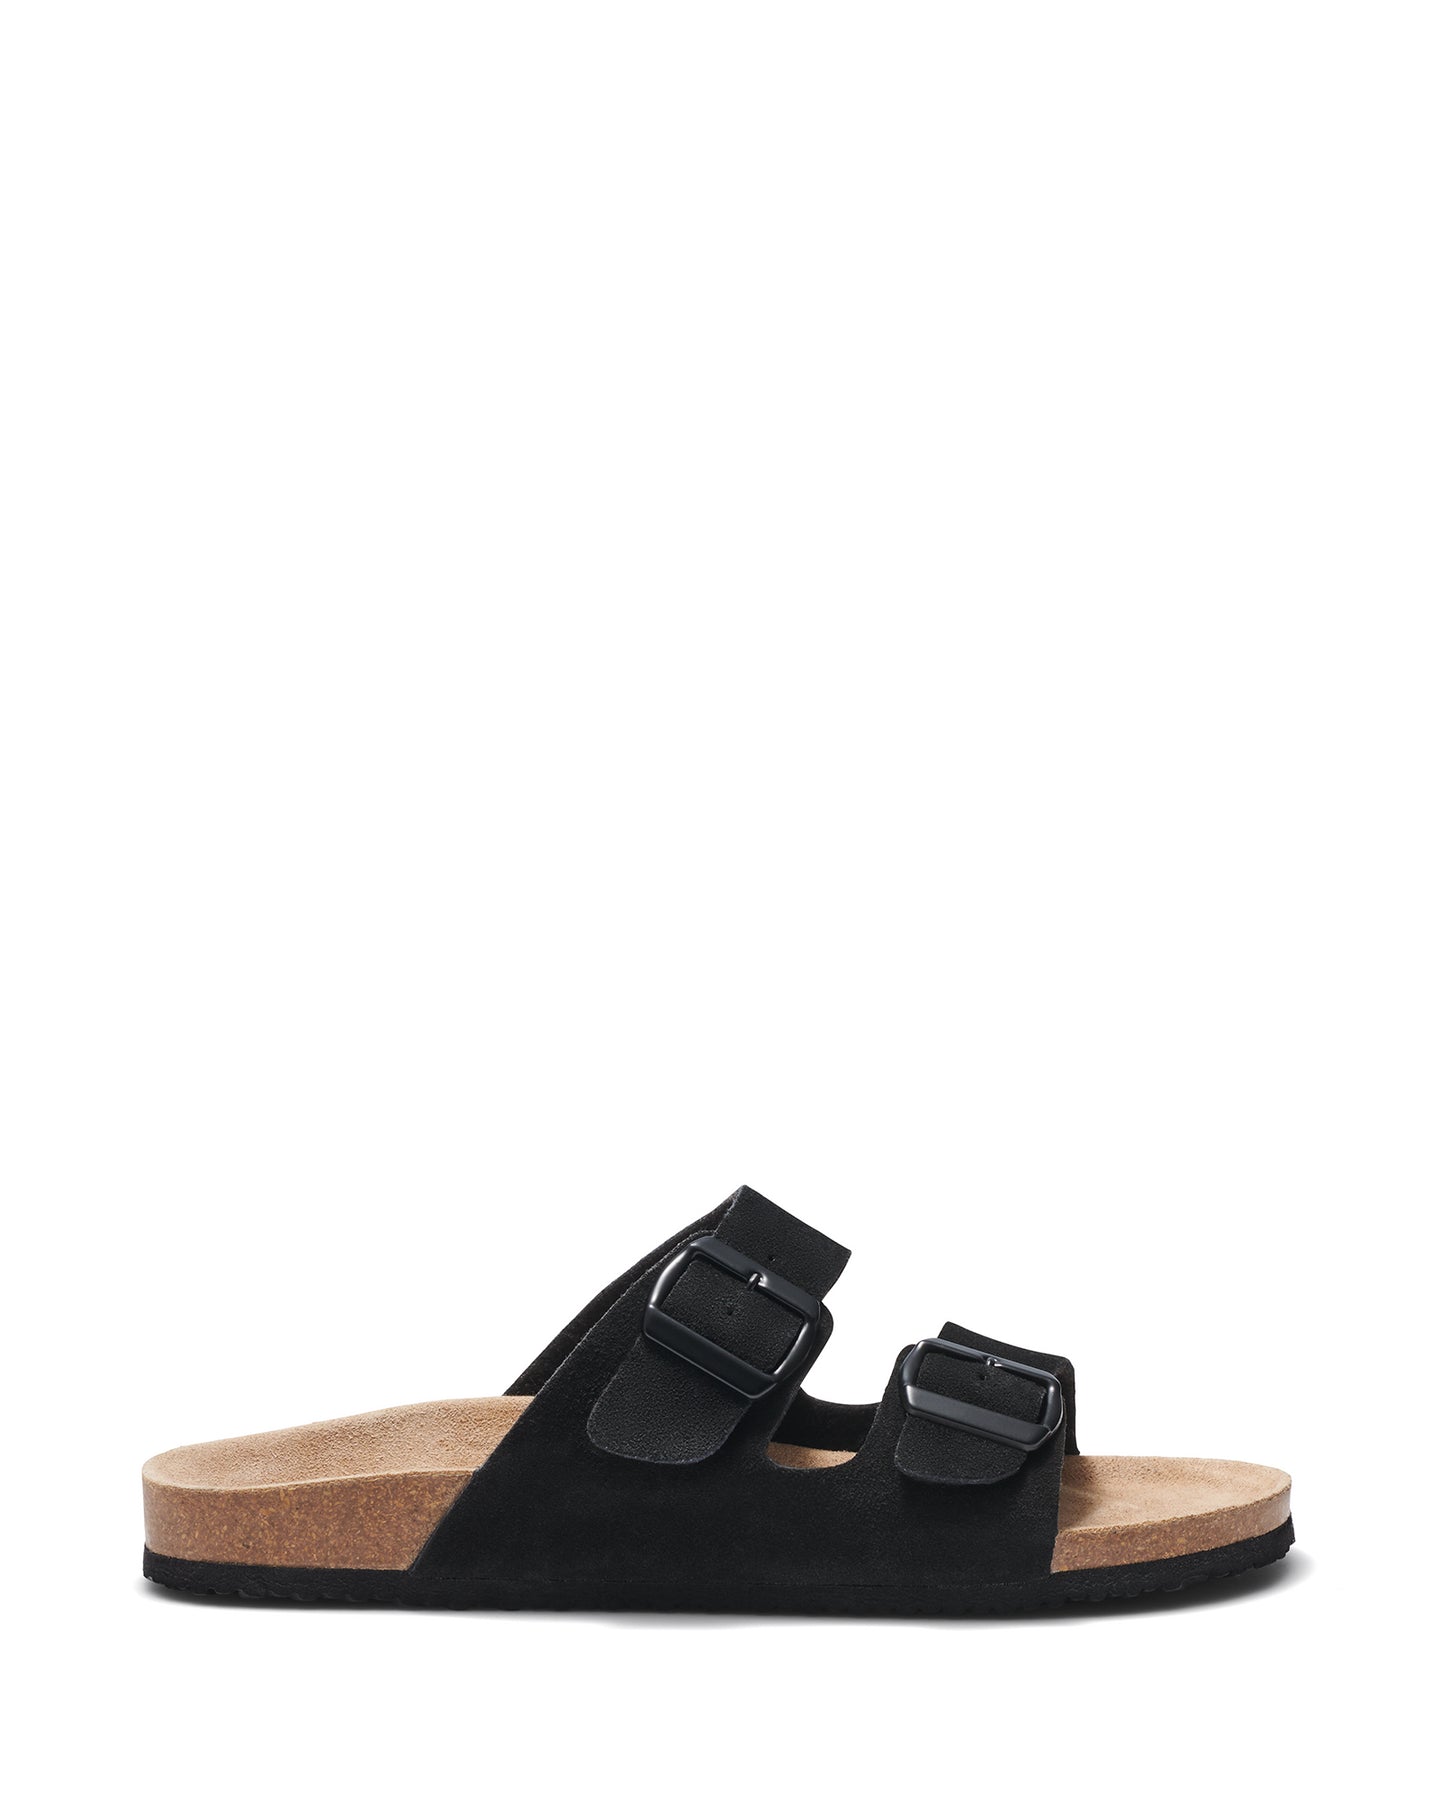 Uncut Shoes Ridley Black | Men's Leather Sandal | Slide | Slip On